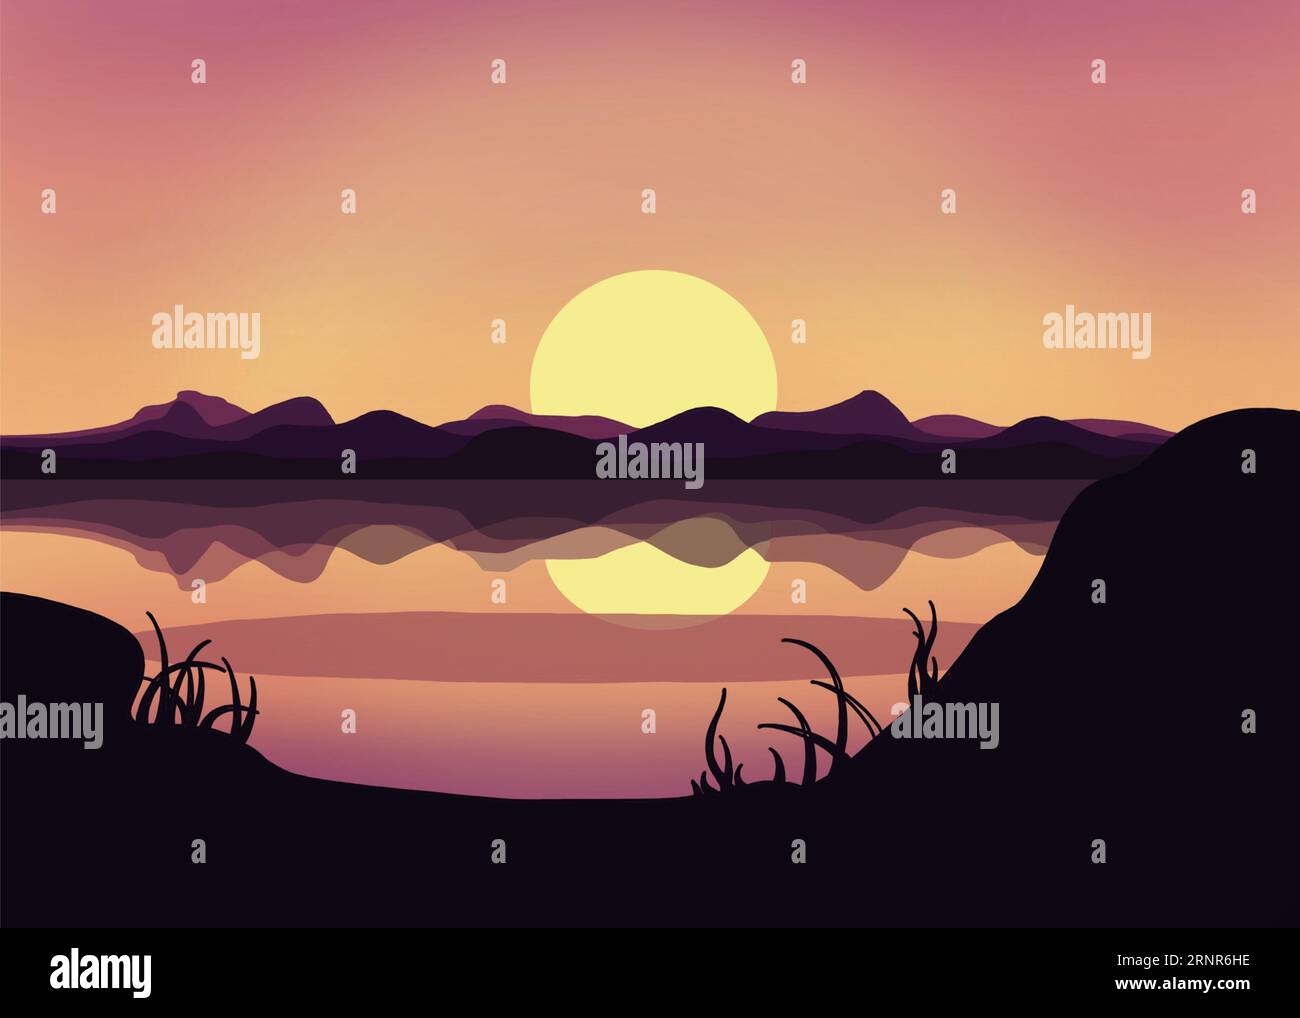 Disegno a cartoni animati di una catena montuosa al tramonto con un lago, con riflessi con sfumature di orientamento del paesaggio viola. Foto Stock